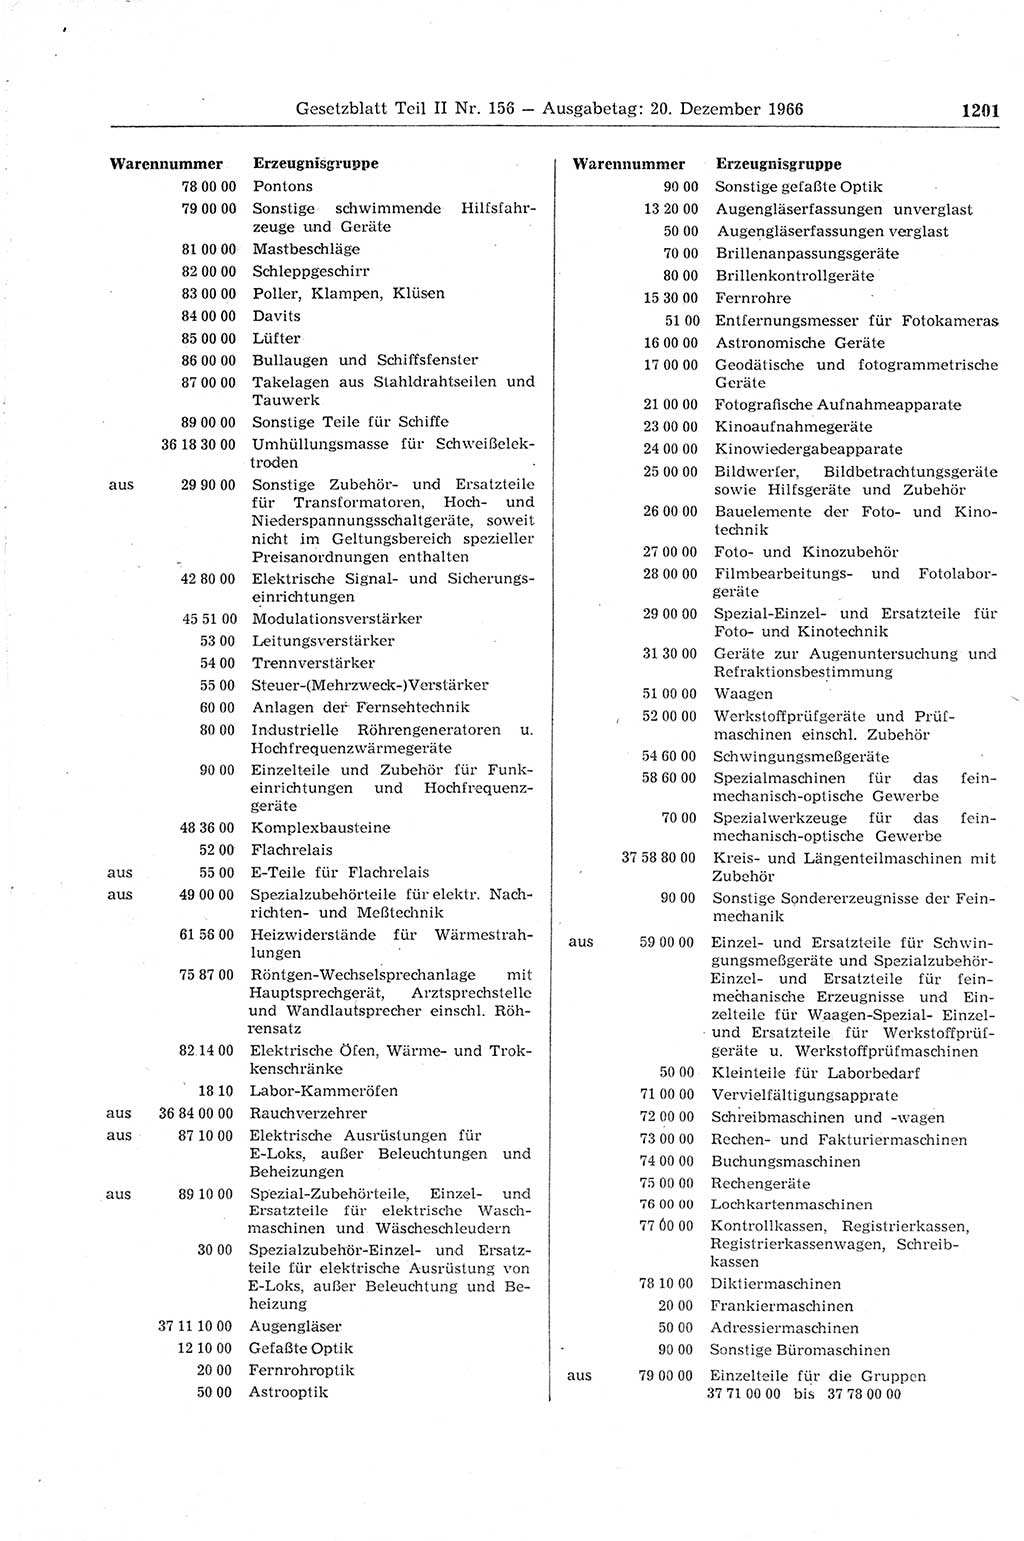 Gesetzblatt (GBl.) der Deutschen Demokratischen Republik (DDR) Teil ⅠⅠ 1966, Seite 1201 (GBl. DDR ⅠⅠ 1966, S. 1201)